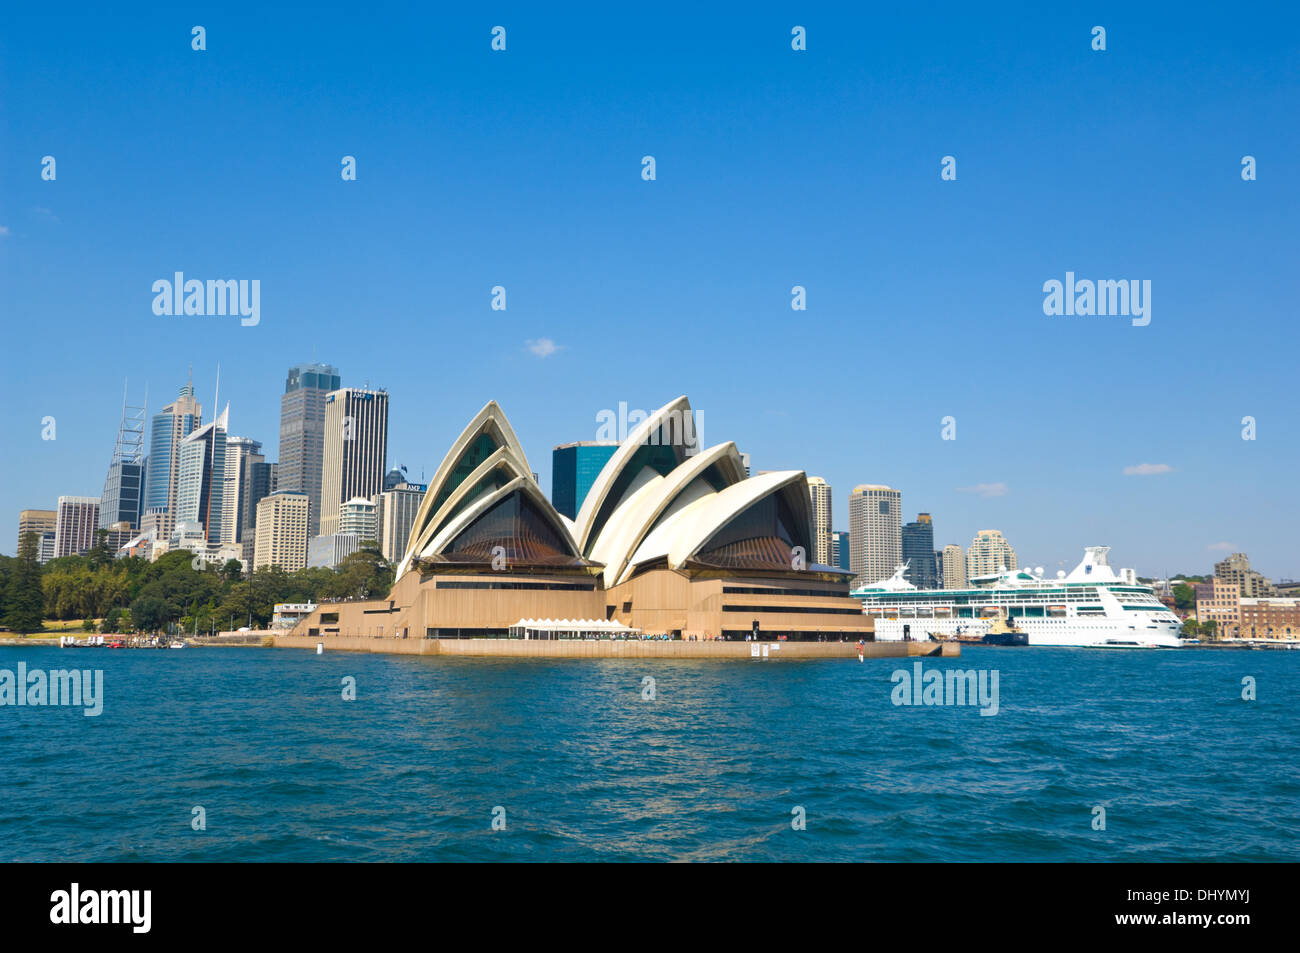 Sydney Opera House and cruise liner, Sydney, Australia Stock Photo